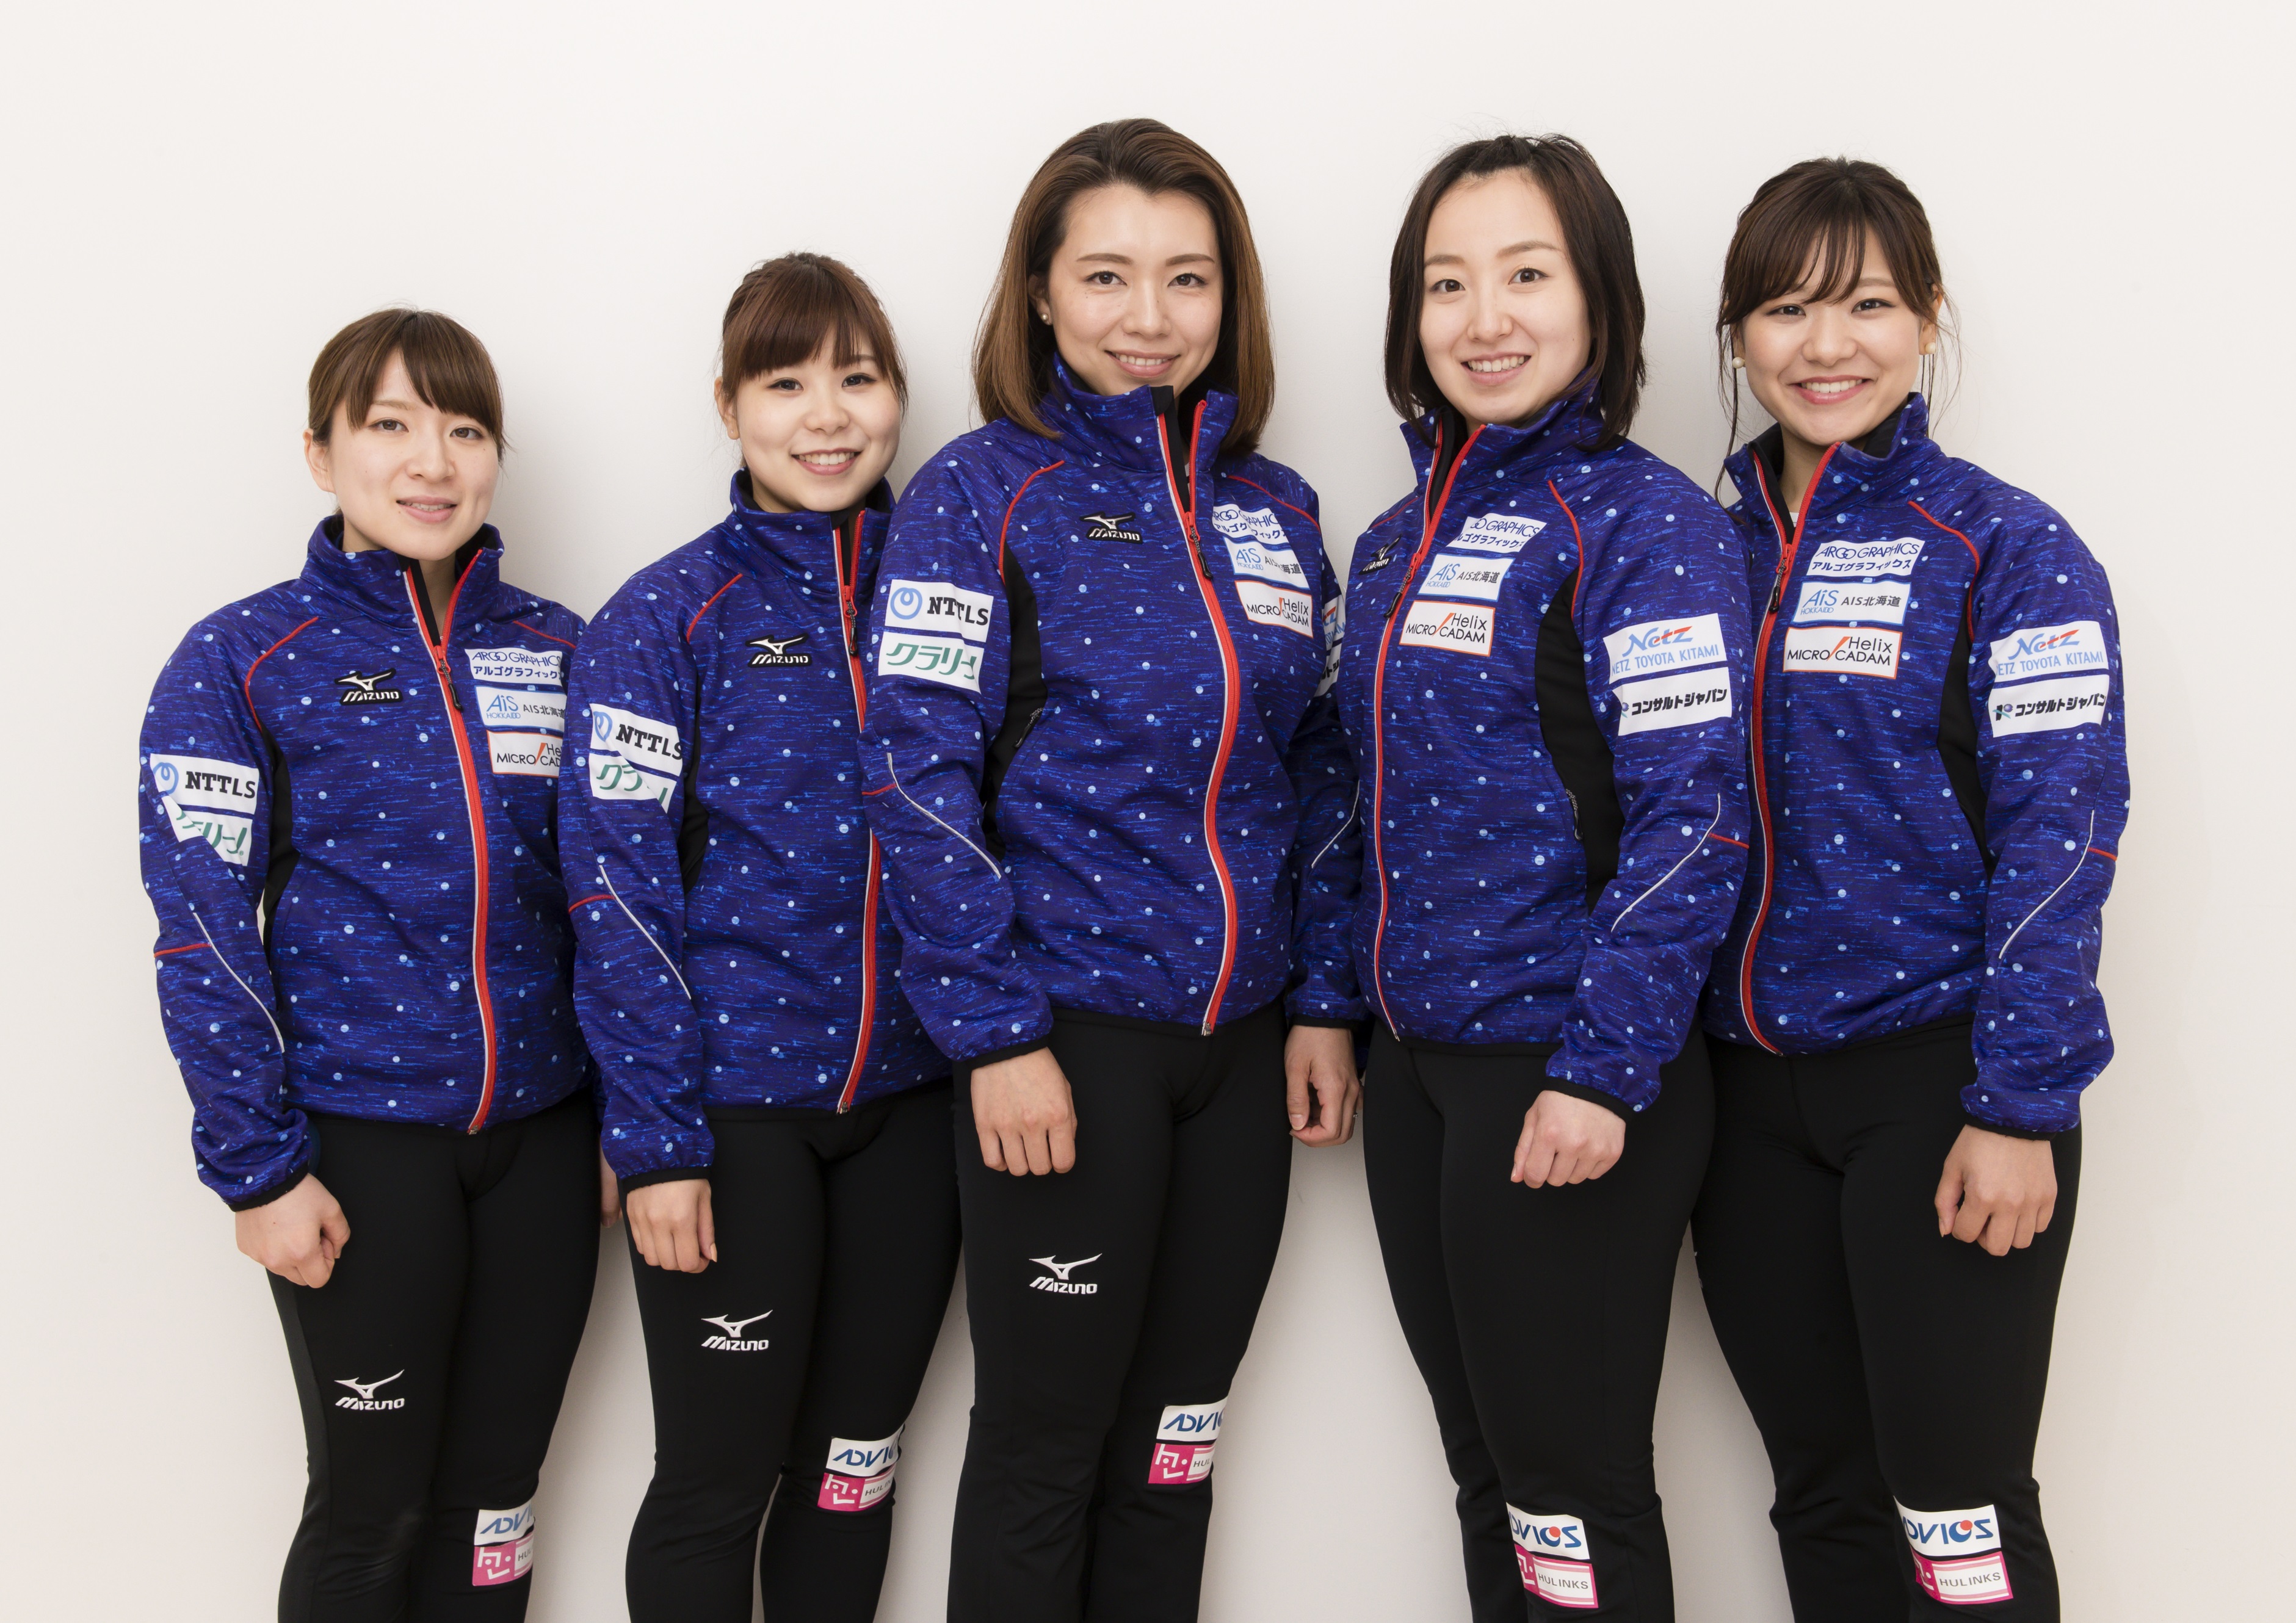 Tokoro Curling Team ロコ ソラーレ Ls北見 マネジメントのお知らせ 株式会社スポーツビズのプレスリリース